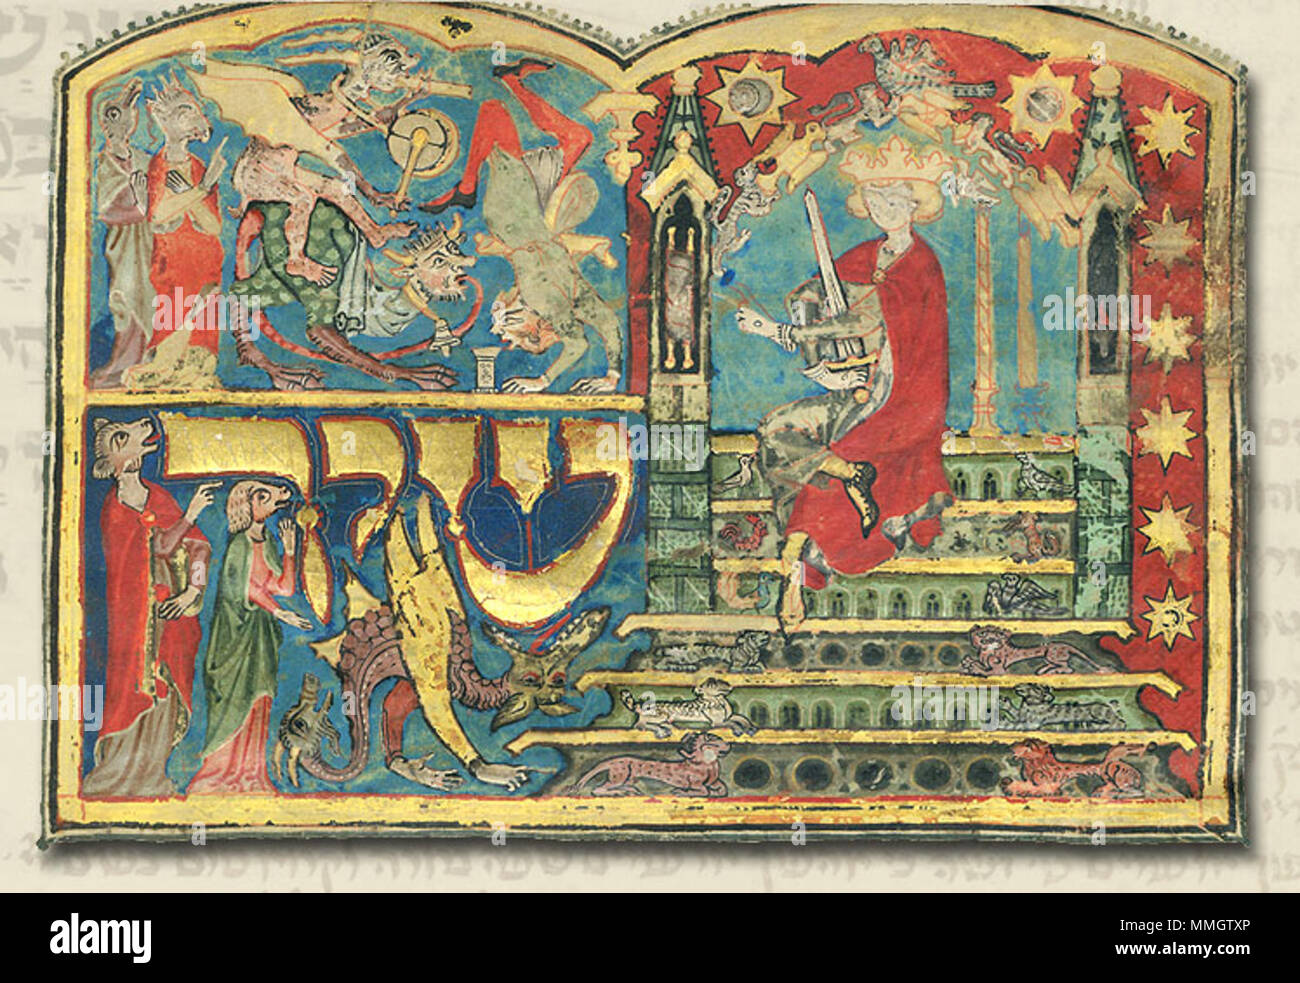 Inglés: En quizá la ilustración más famosa de todo el manuscrito Mahzor  tripartita, decorando el frontispicio del Cantar de los Cantares, vemos al rey  Salomón, sentado en su trono en compañía